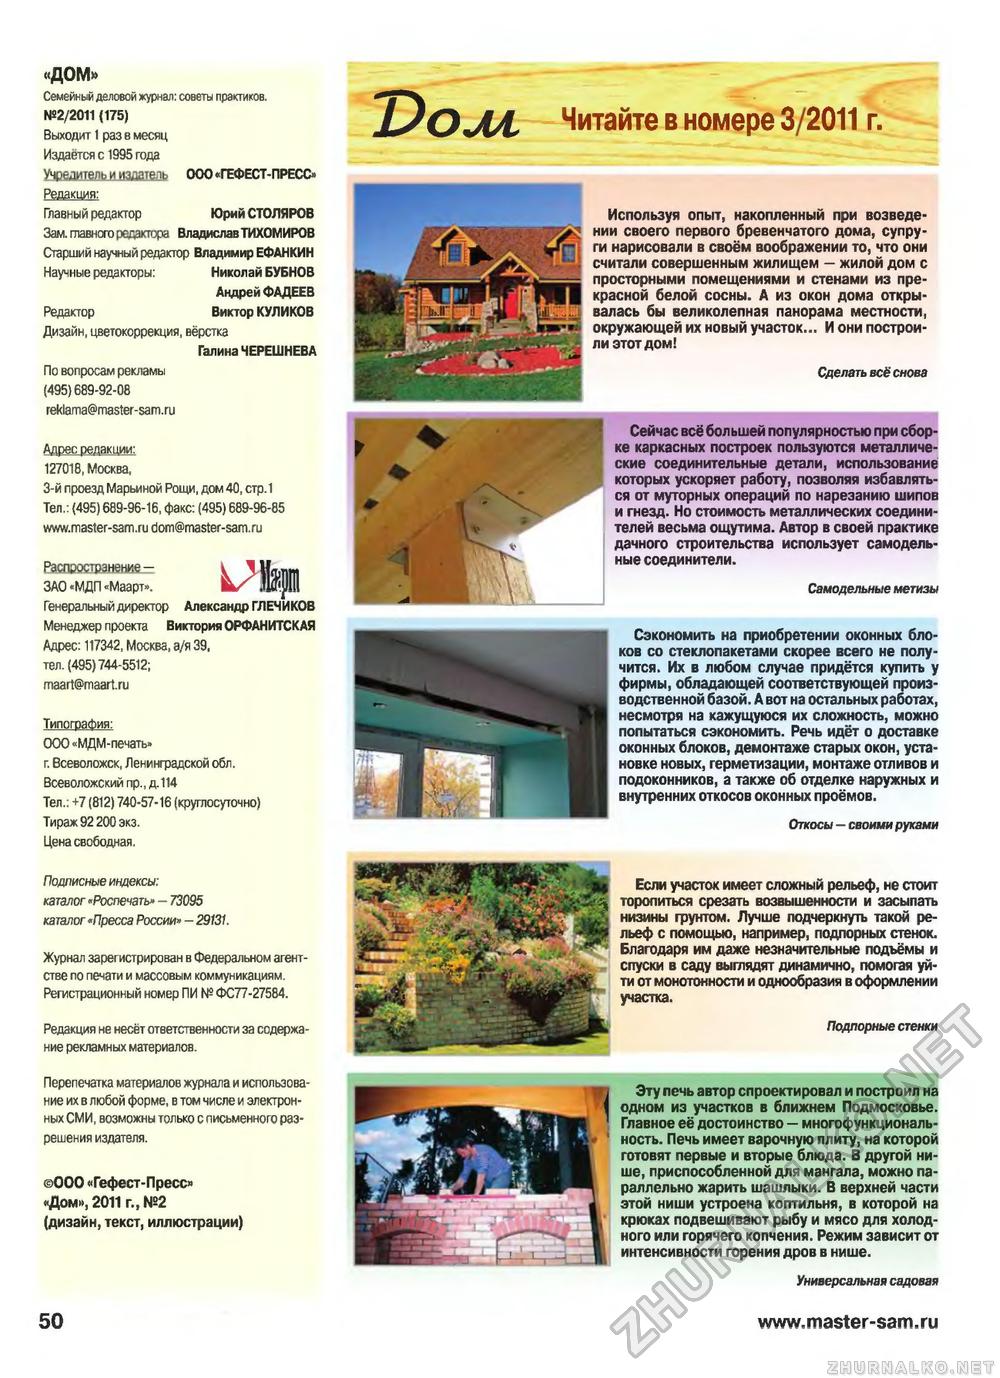 Дом 2011-02, страница 50